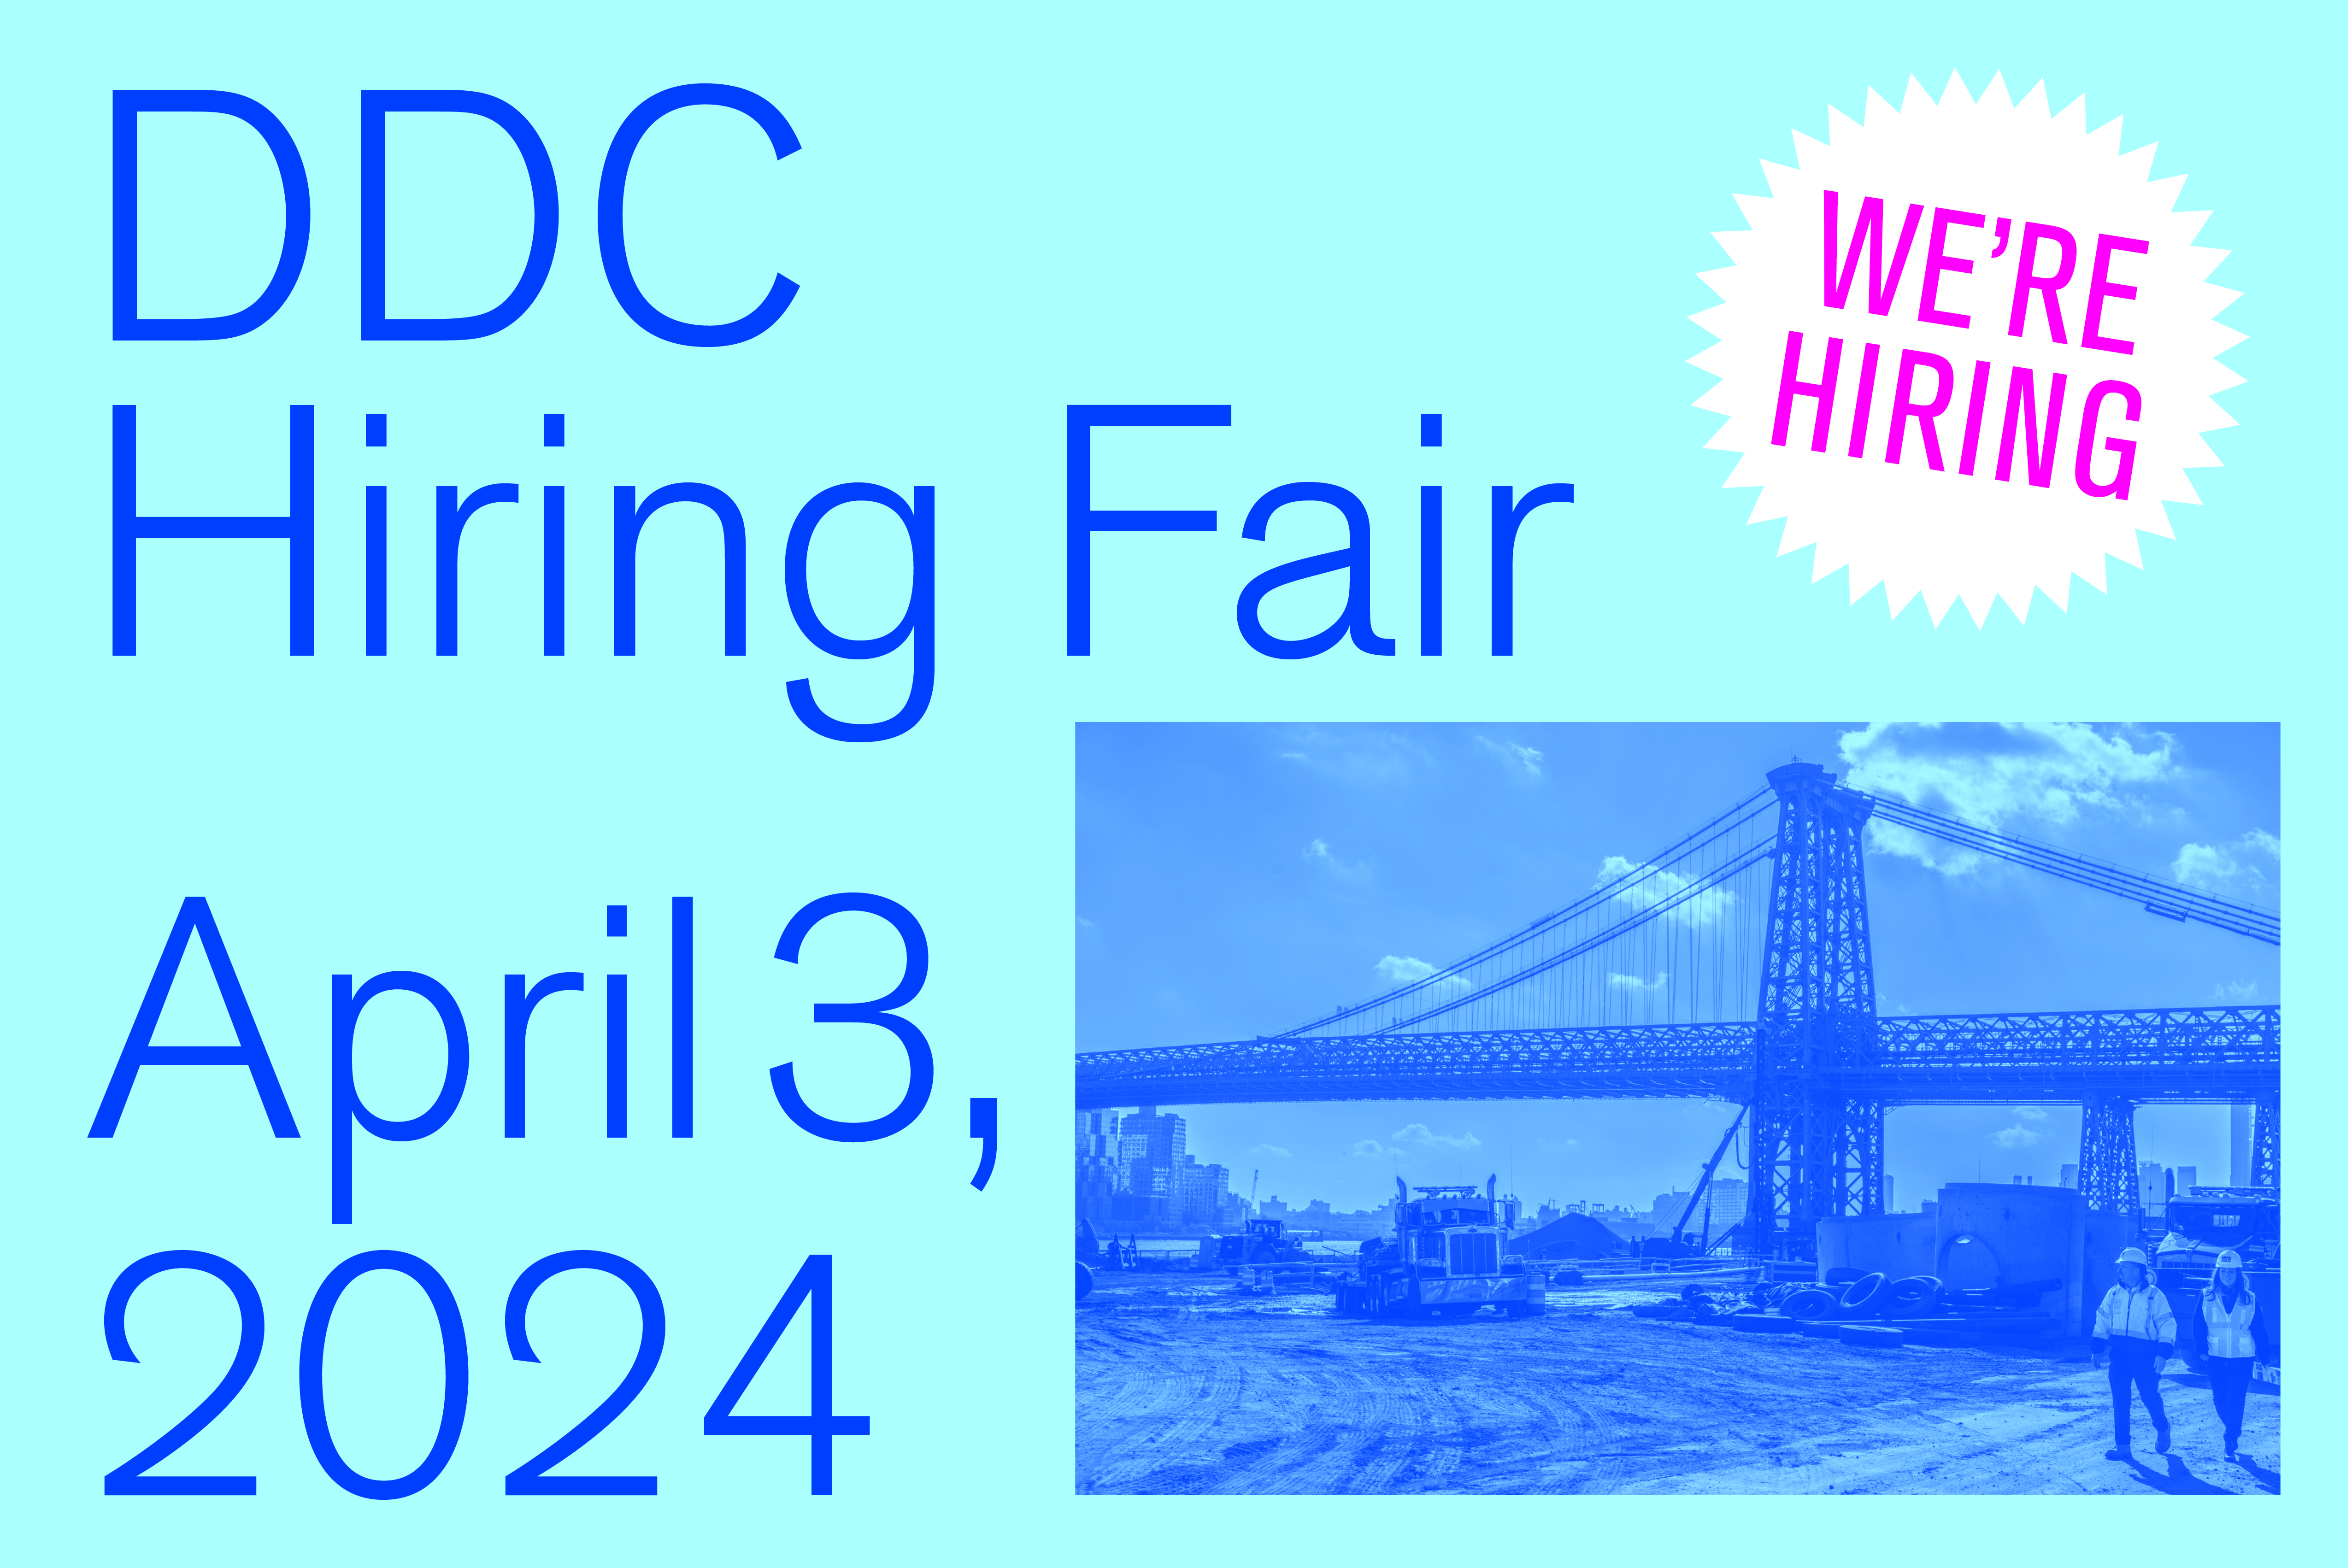 DDC Hiring Fair Announcement on April 3rd